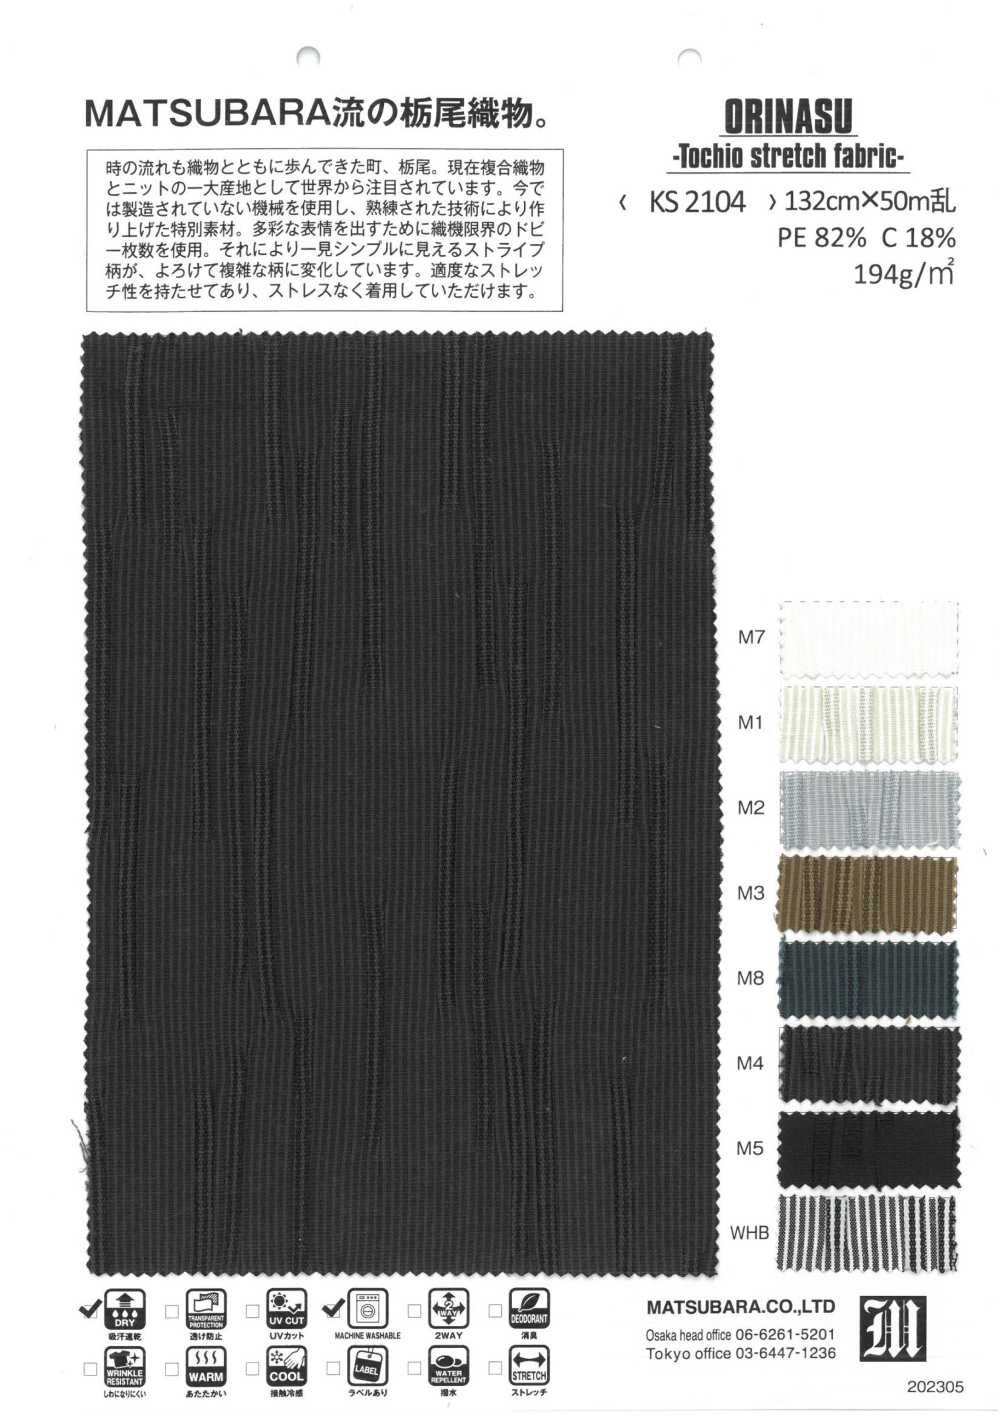 KS2104 ORINASU -Tochio Stretchstoff-[Textilgewebe] Matsubara